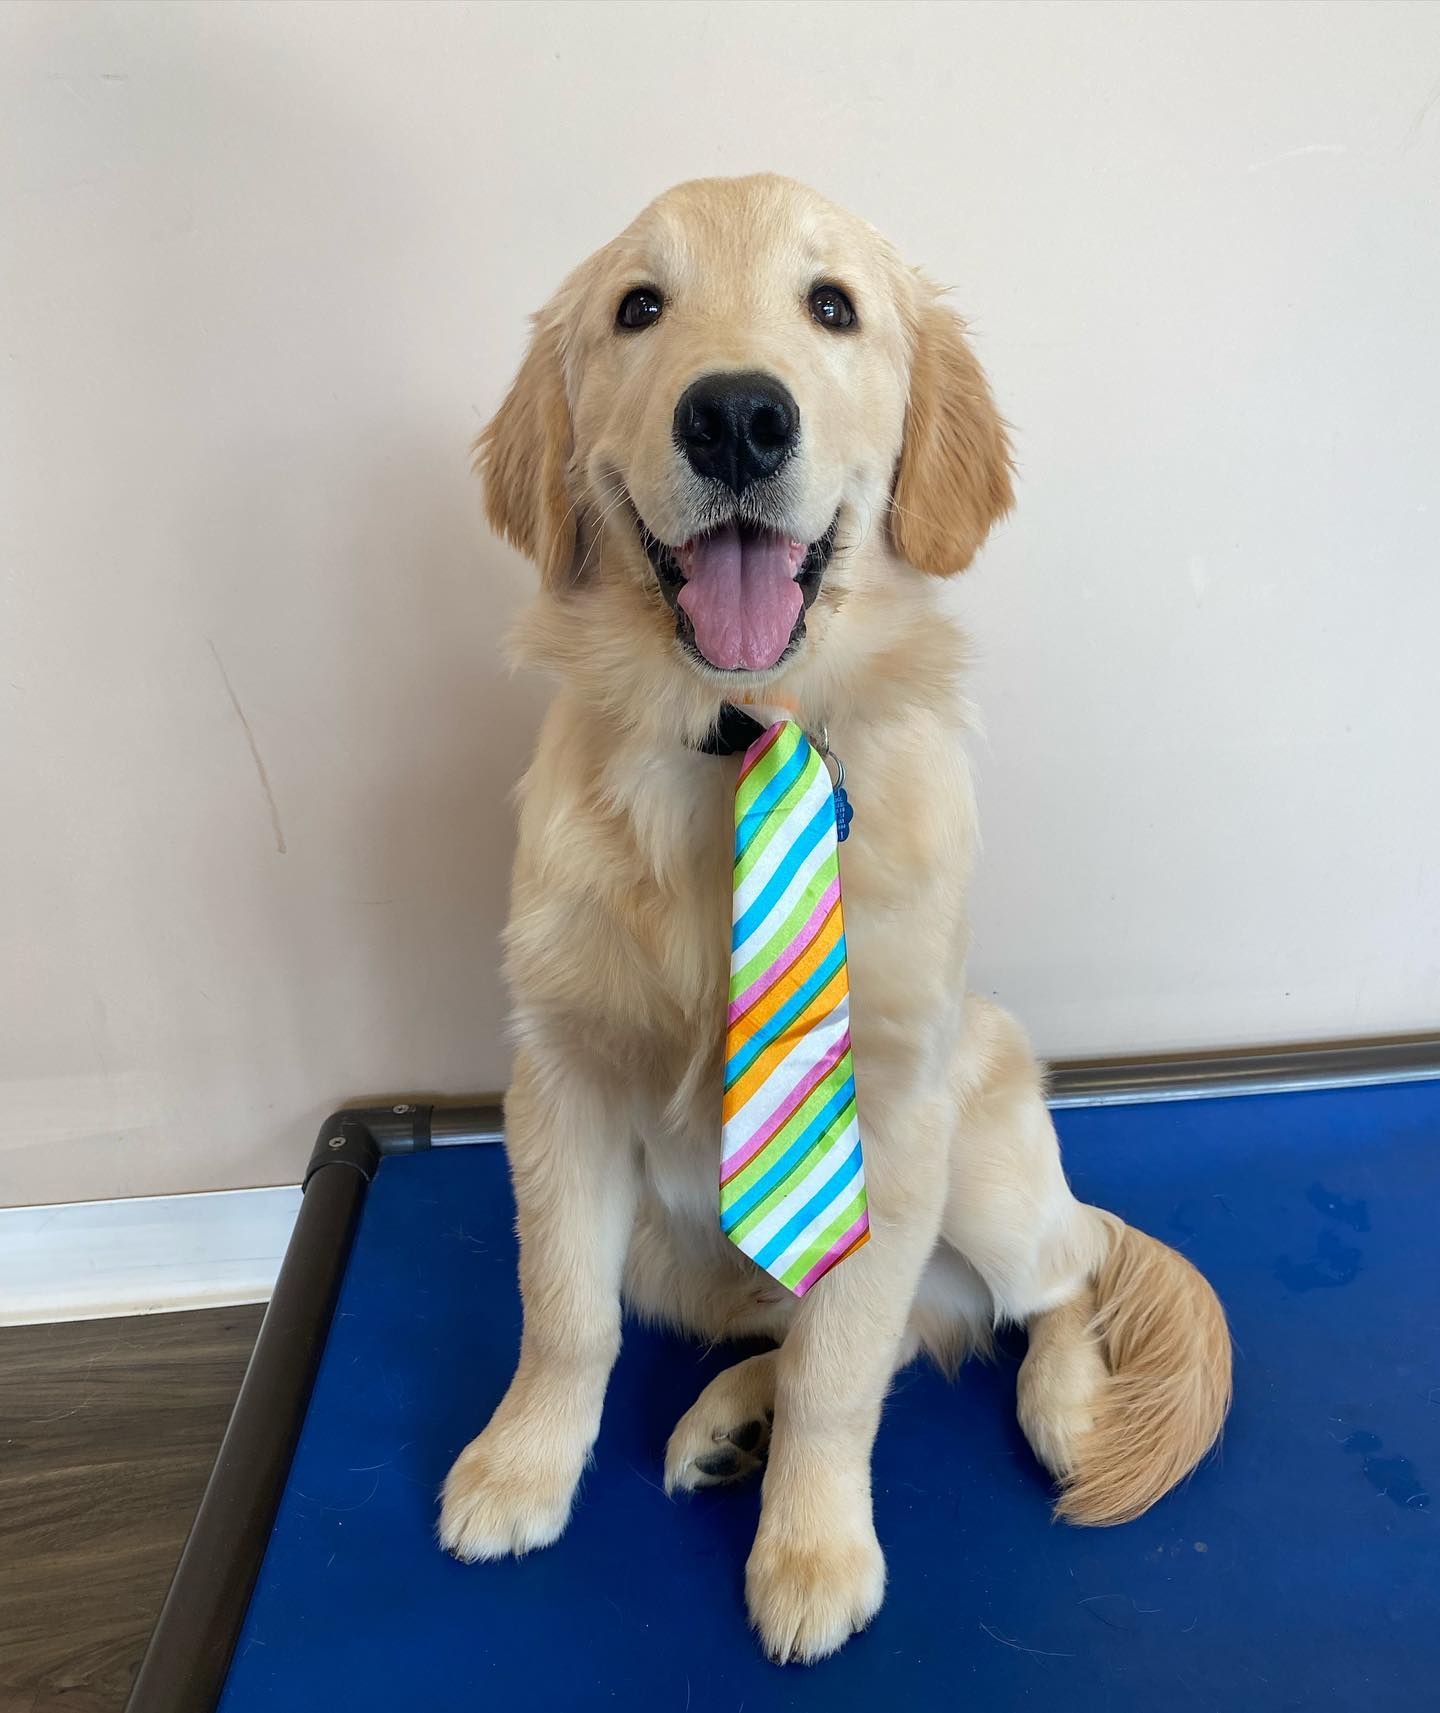 Puppy sitting wearing a tie